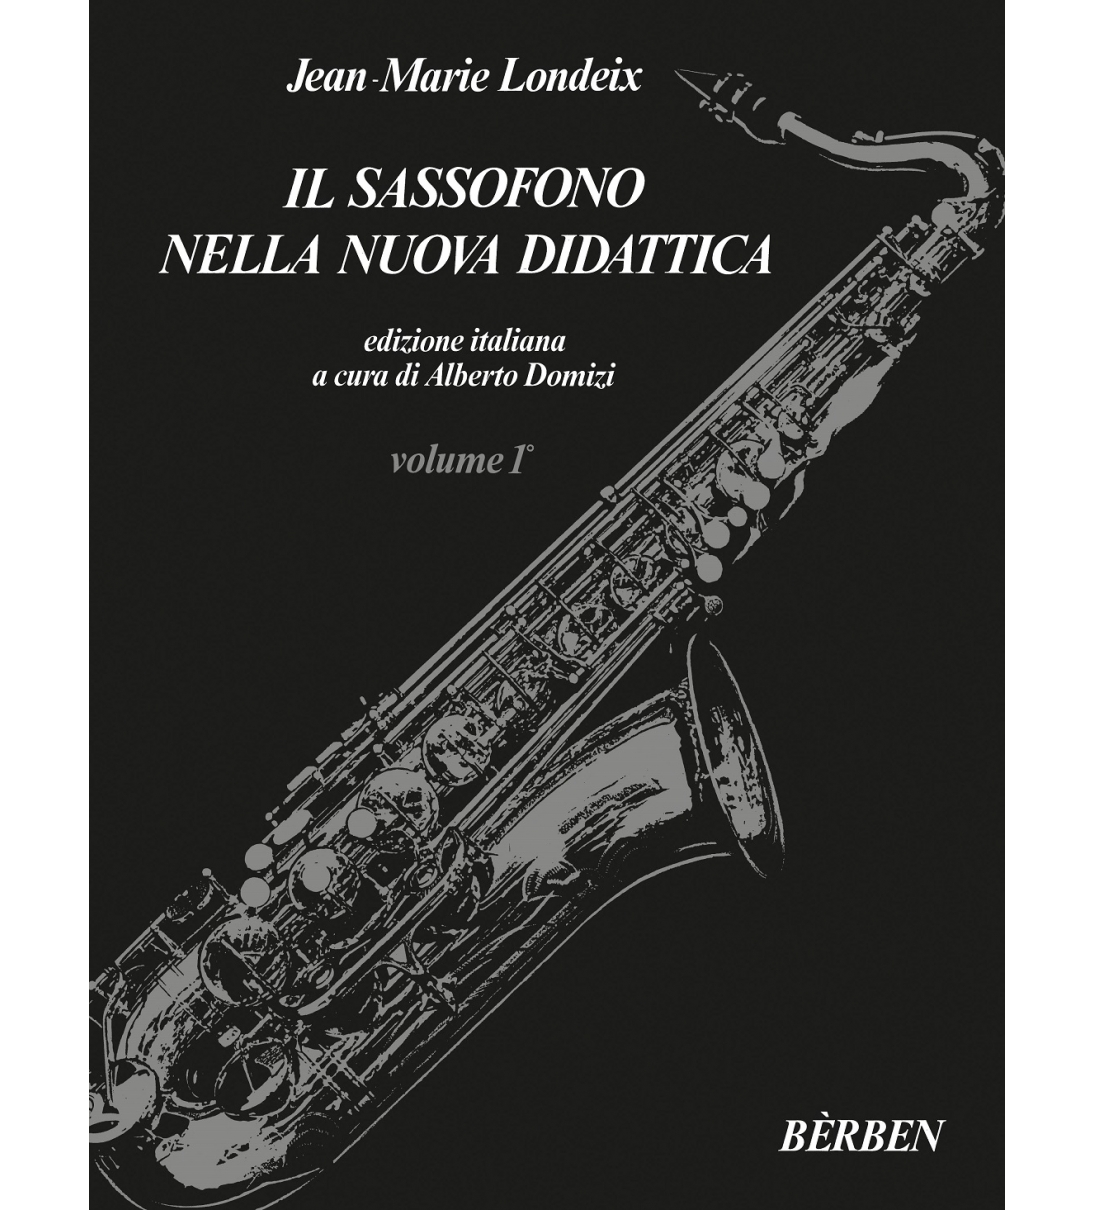 Il sassofono nella nuova didattica - Volume 1 